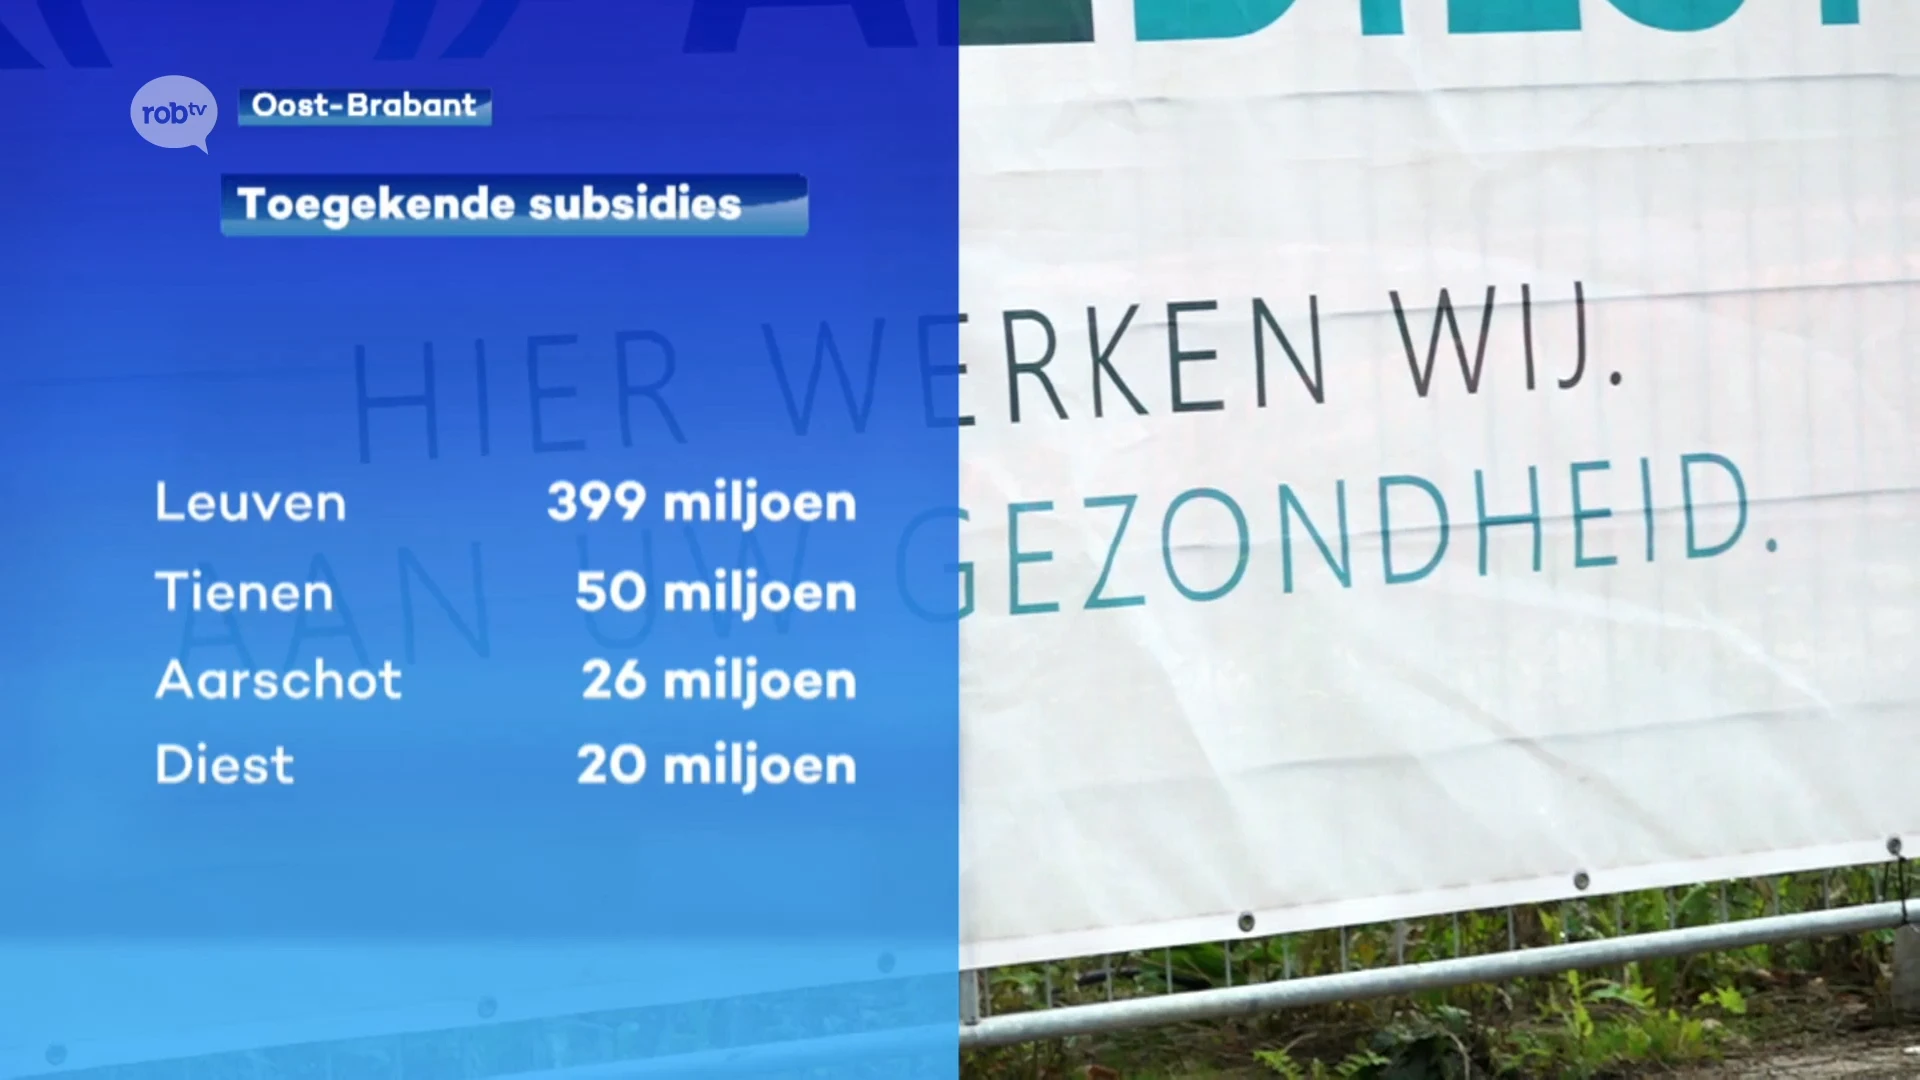 Meer dan 60% van de subsidies in onze regio stroomt naar Leuven